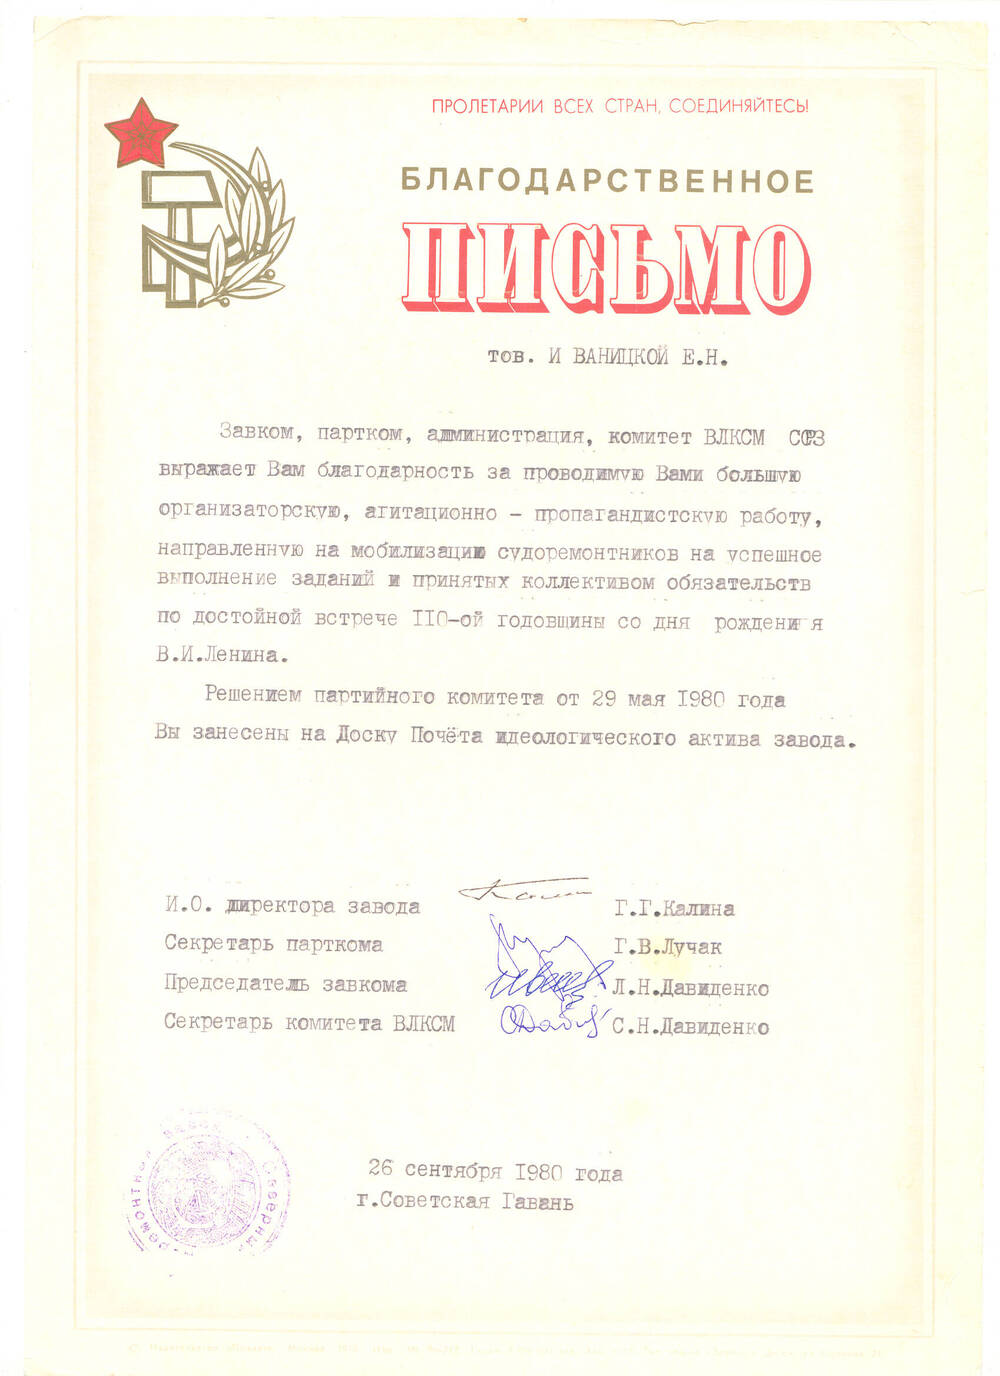 Письмо благодарственное Иваницкой Е.Н. о занесении на Доску почета идеологического актива завода